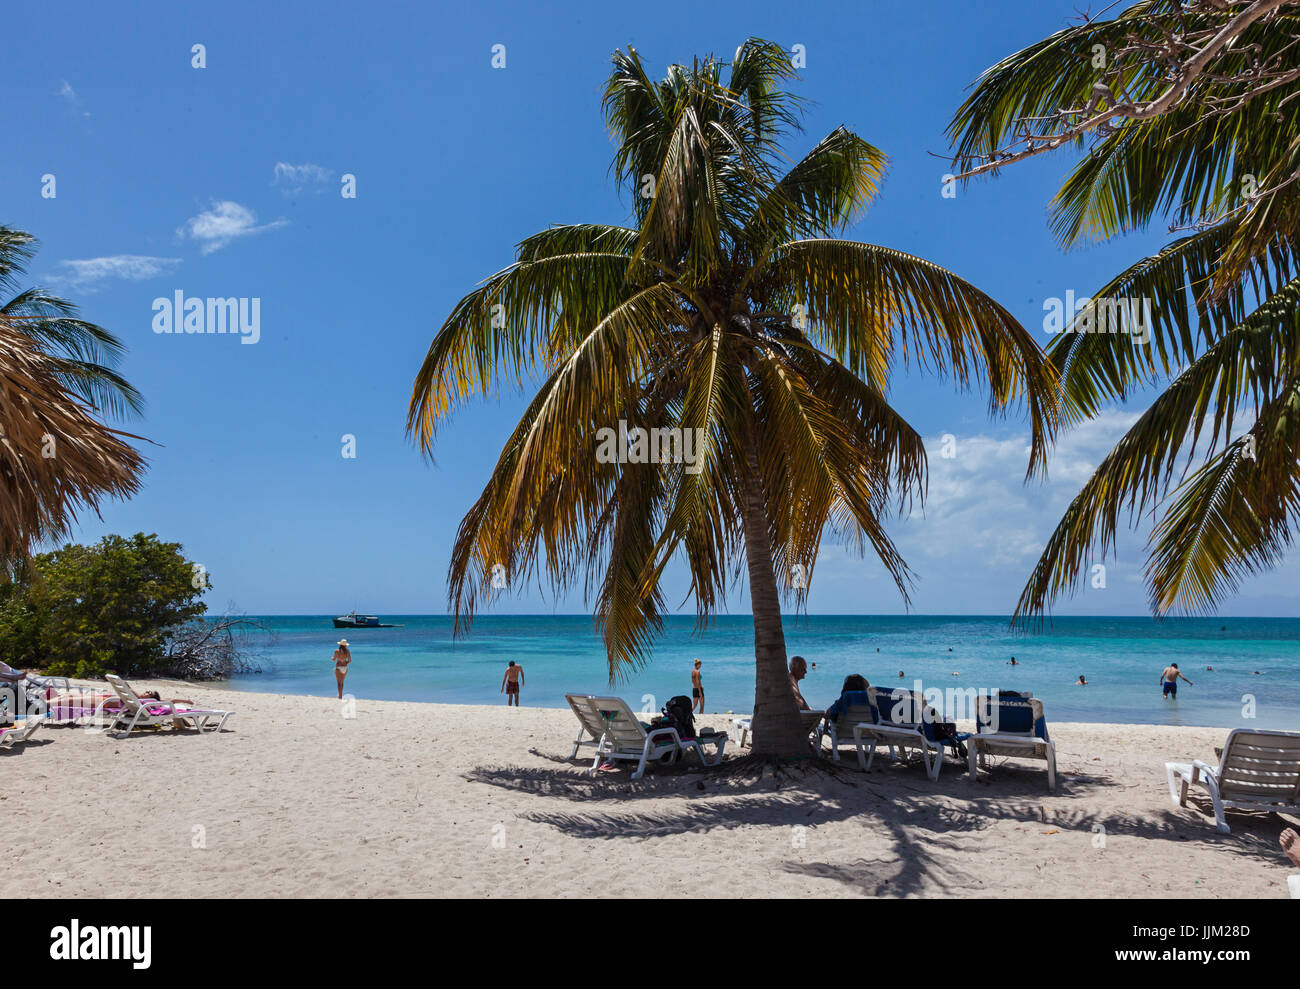 La isla tropical de Cayo Iguana llegar en barco desde Playa Ancón es un destino turístico - TRINIDAD, CUBA Foto de stock